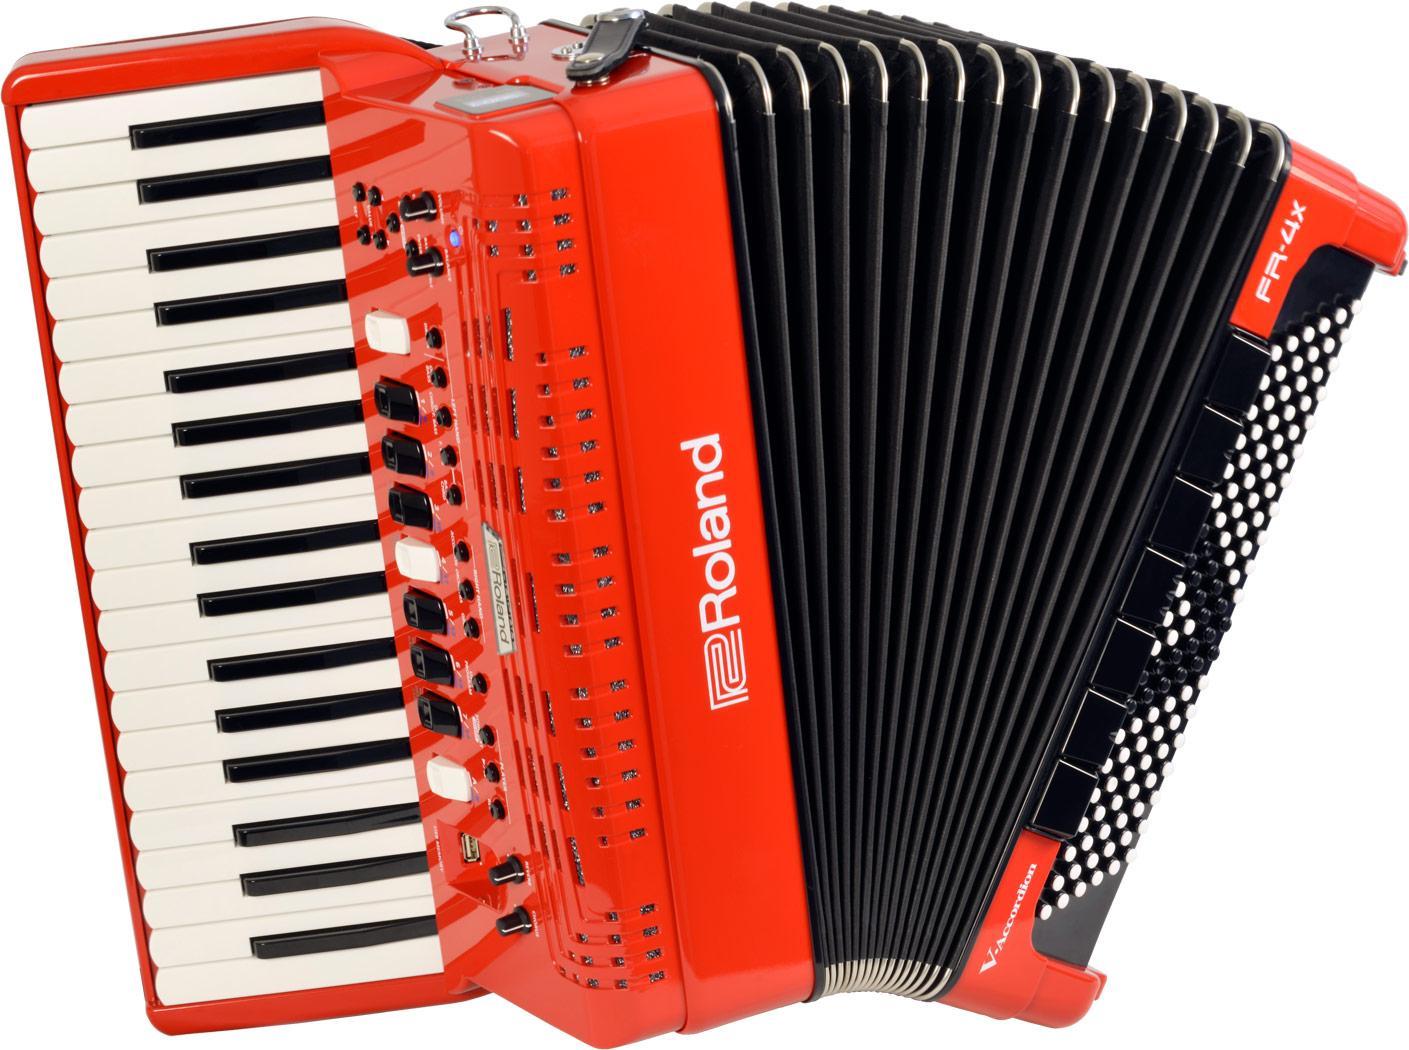 Digital accordion Roland FR-4X-RD